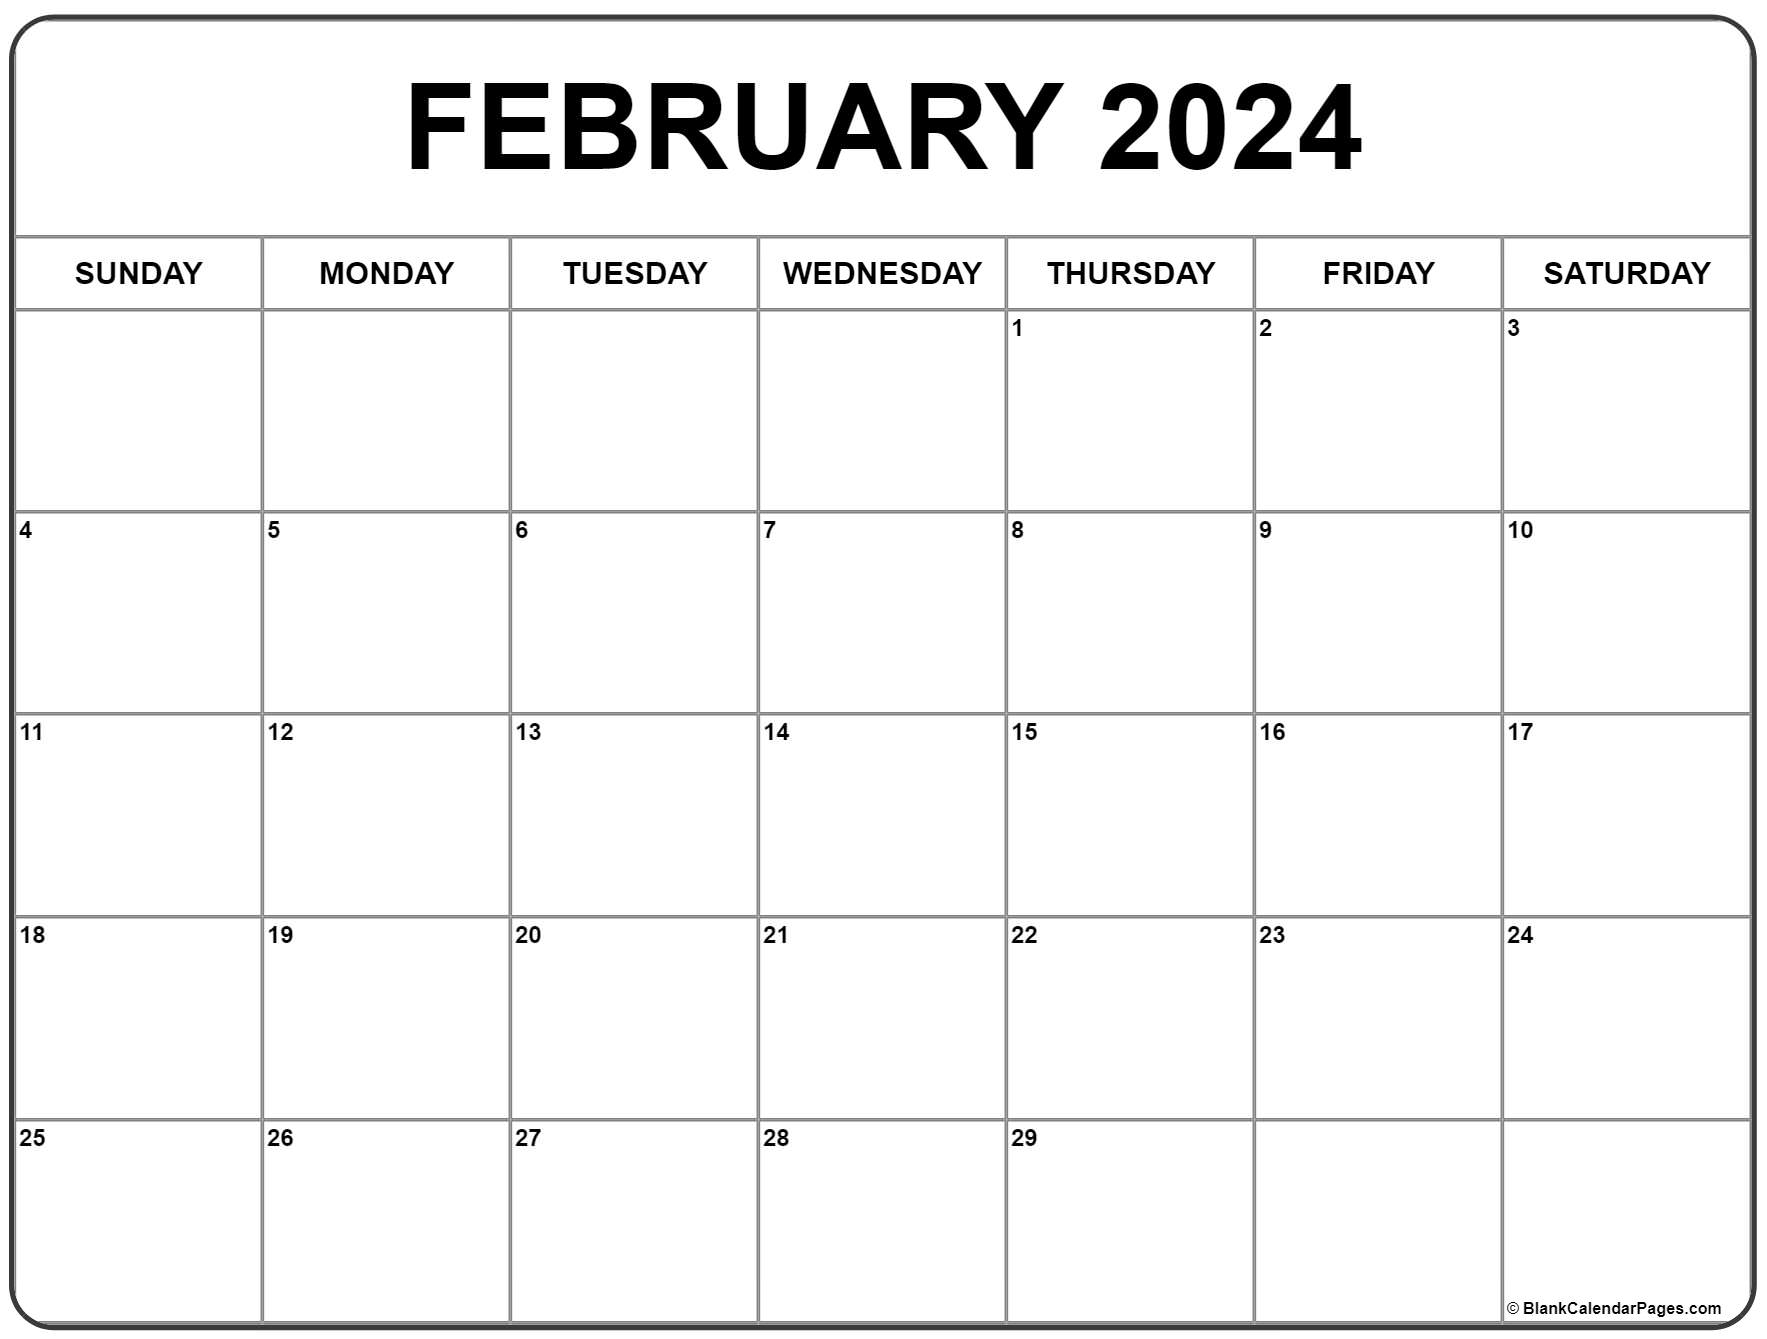 February 2024 Calendar | Free Printable Calendar for Feb 2024 Printable Calendar Free